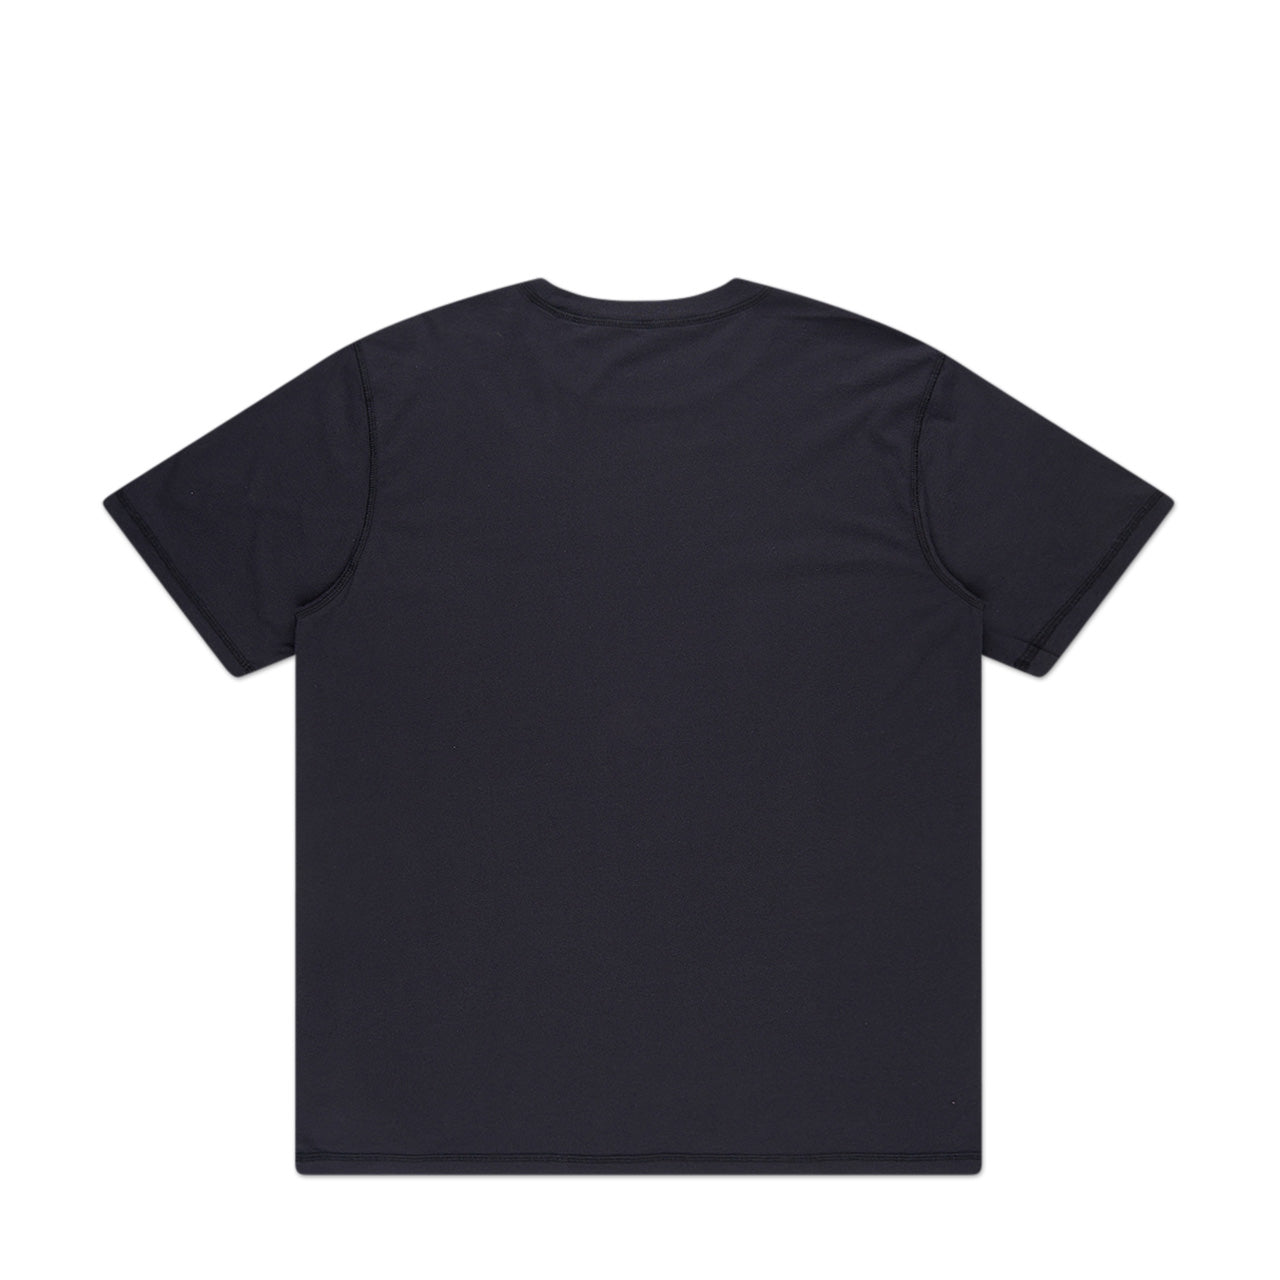 affxwrks wrks t-shirt (washed black)